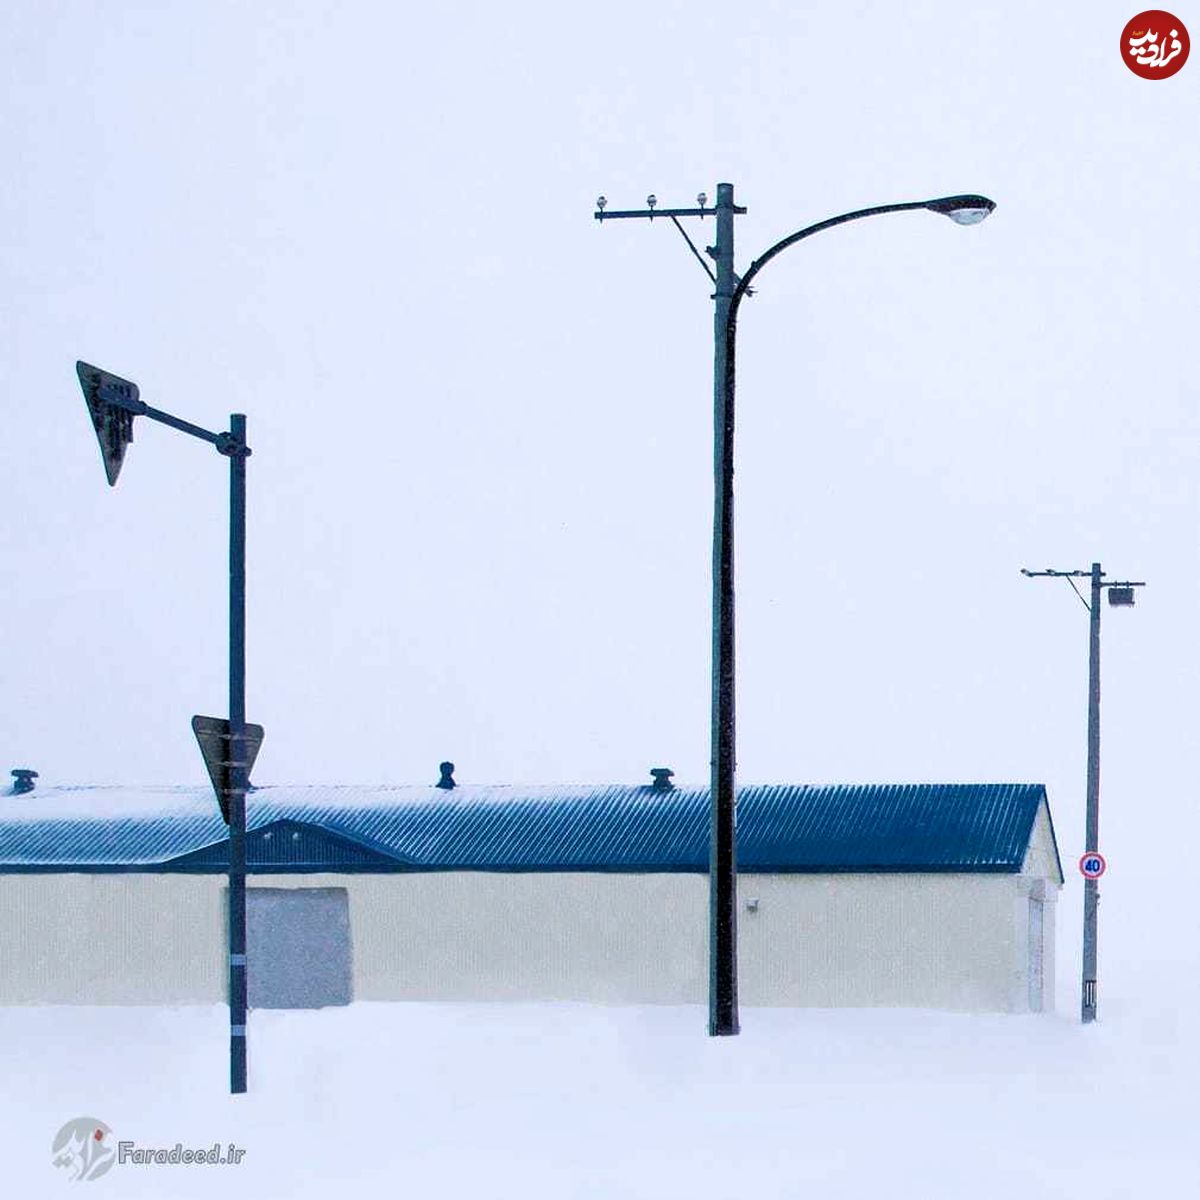 تصاویر عجیب و اسرار آمیز برف در ژاپن